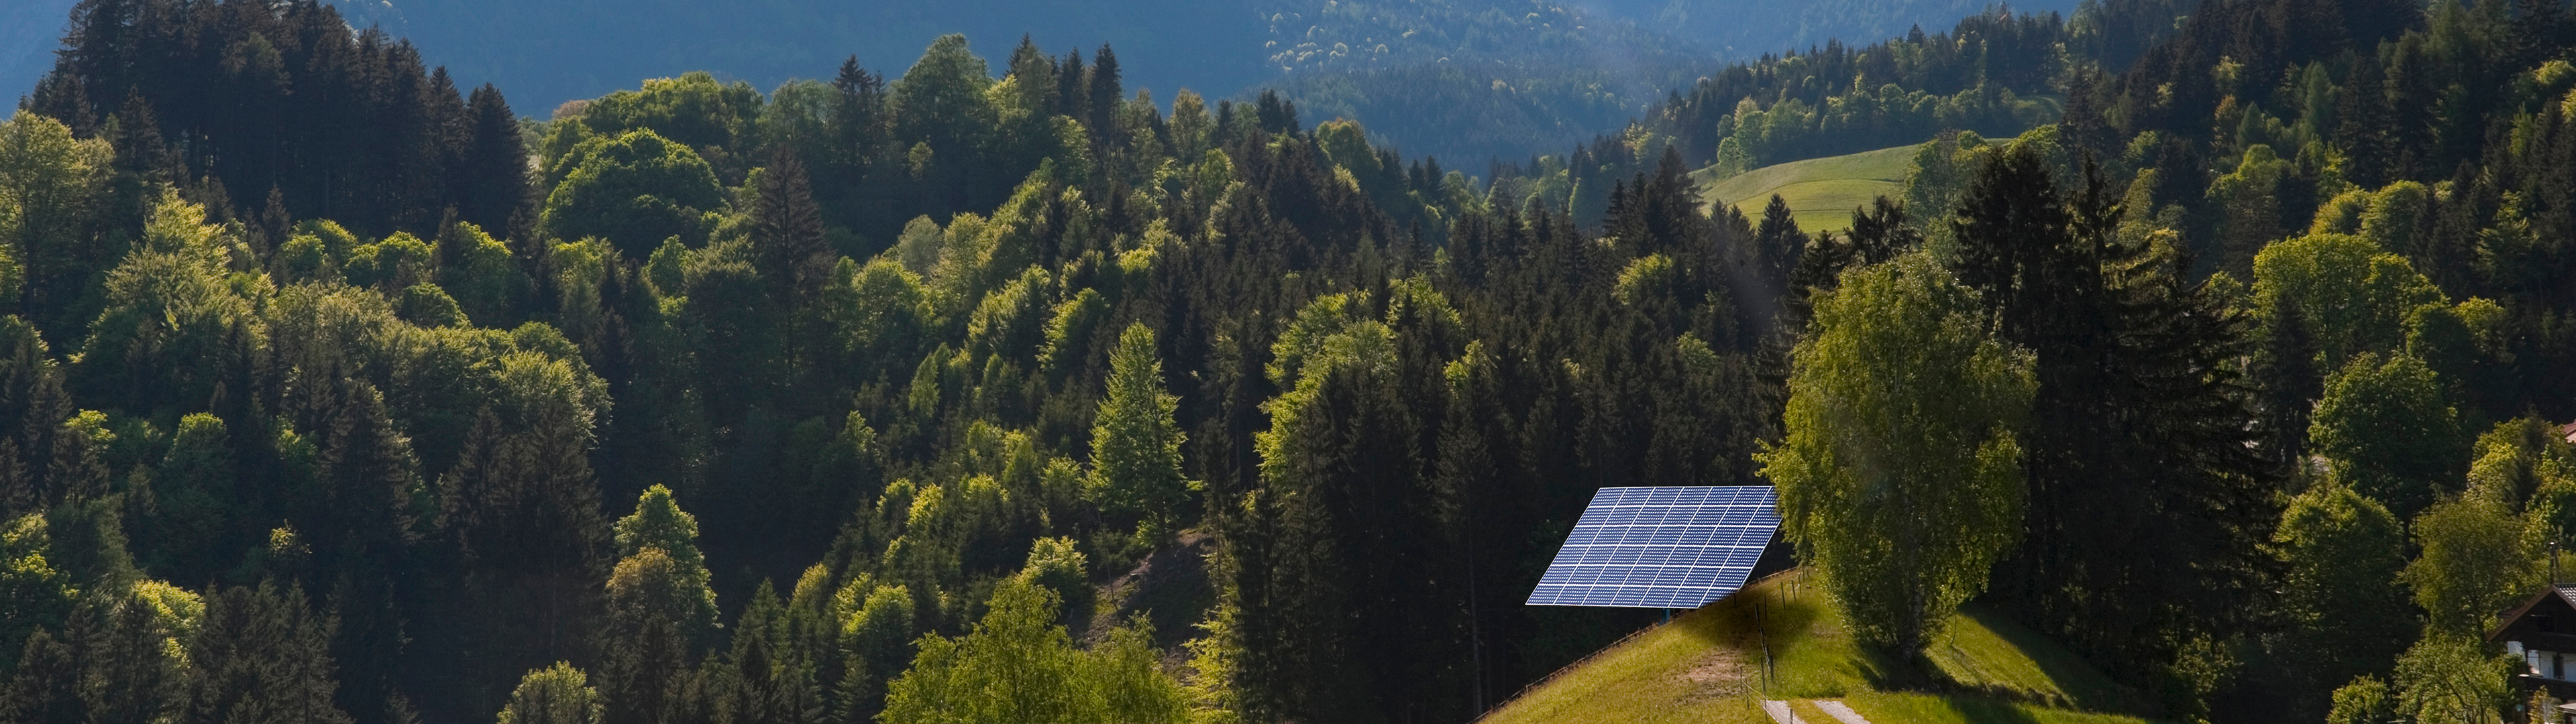 Solar panel on hillside